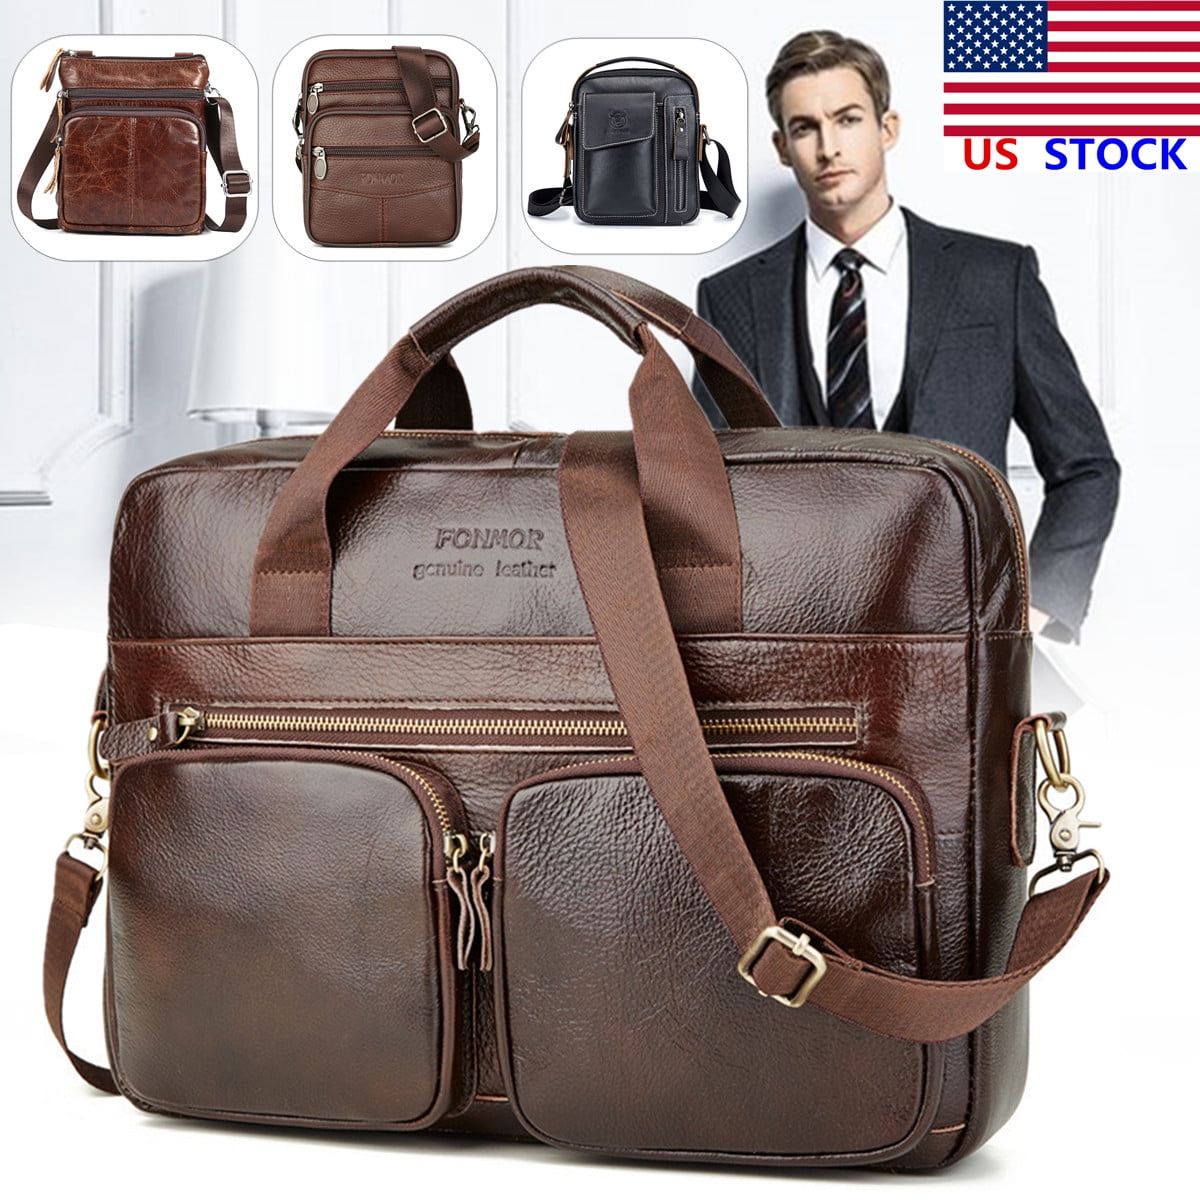 KUDOSALE - US Mens Cowhide Leather Briefcase Business Laptop Messenger Shoulder Bag - Walmart ...